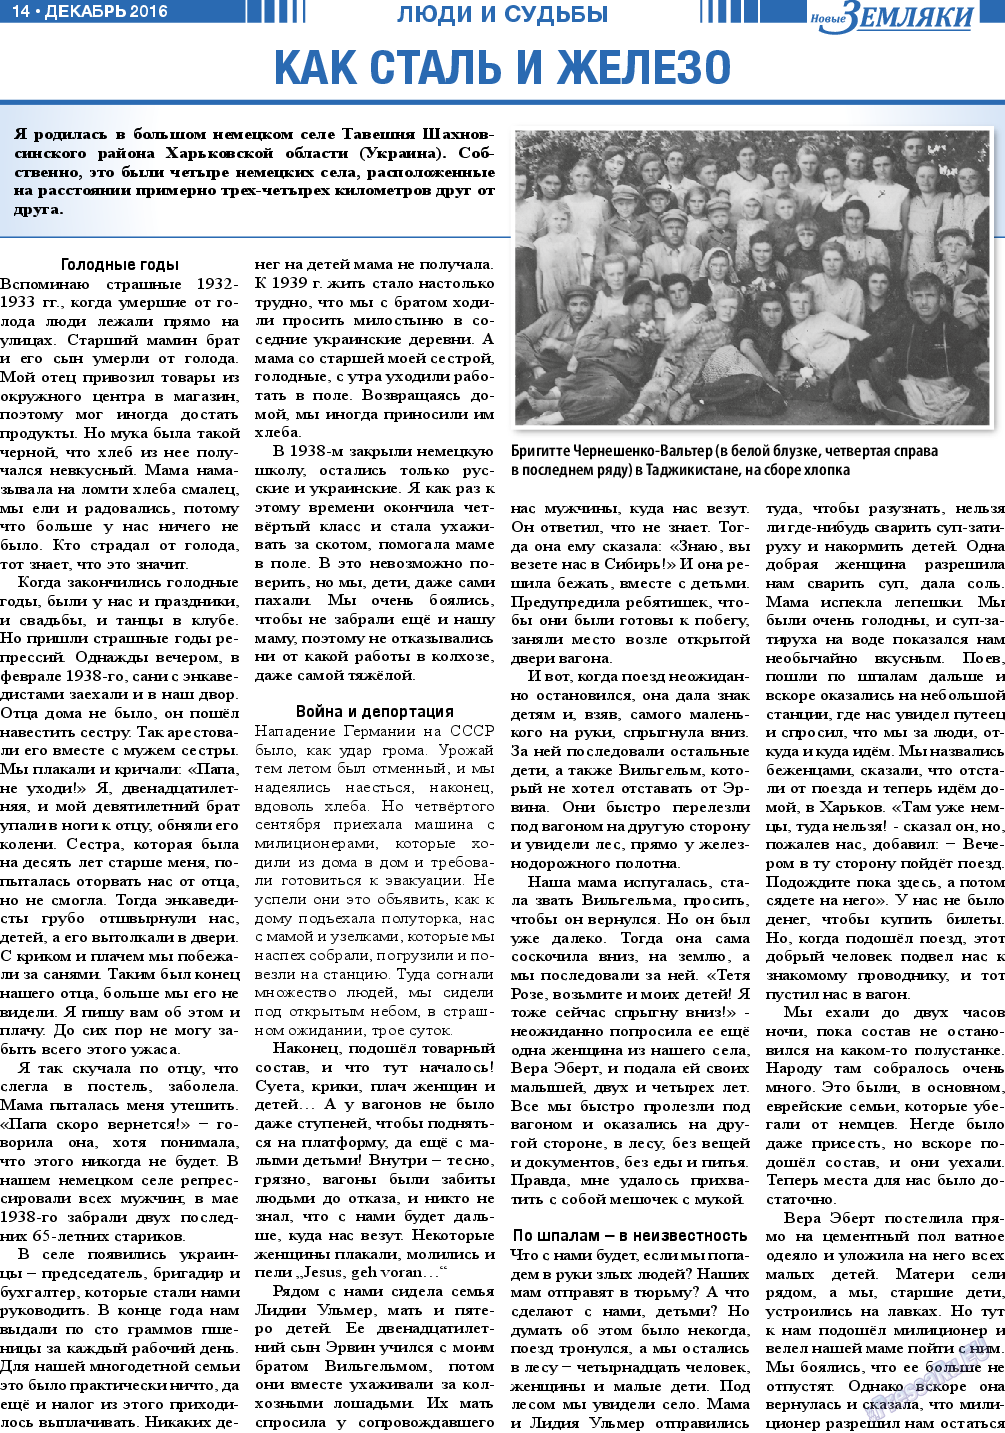 Новые Земляки, газета. 2016 №12 стр.14